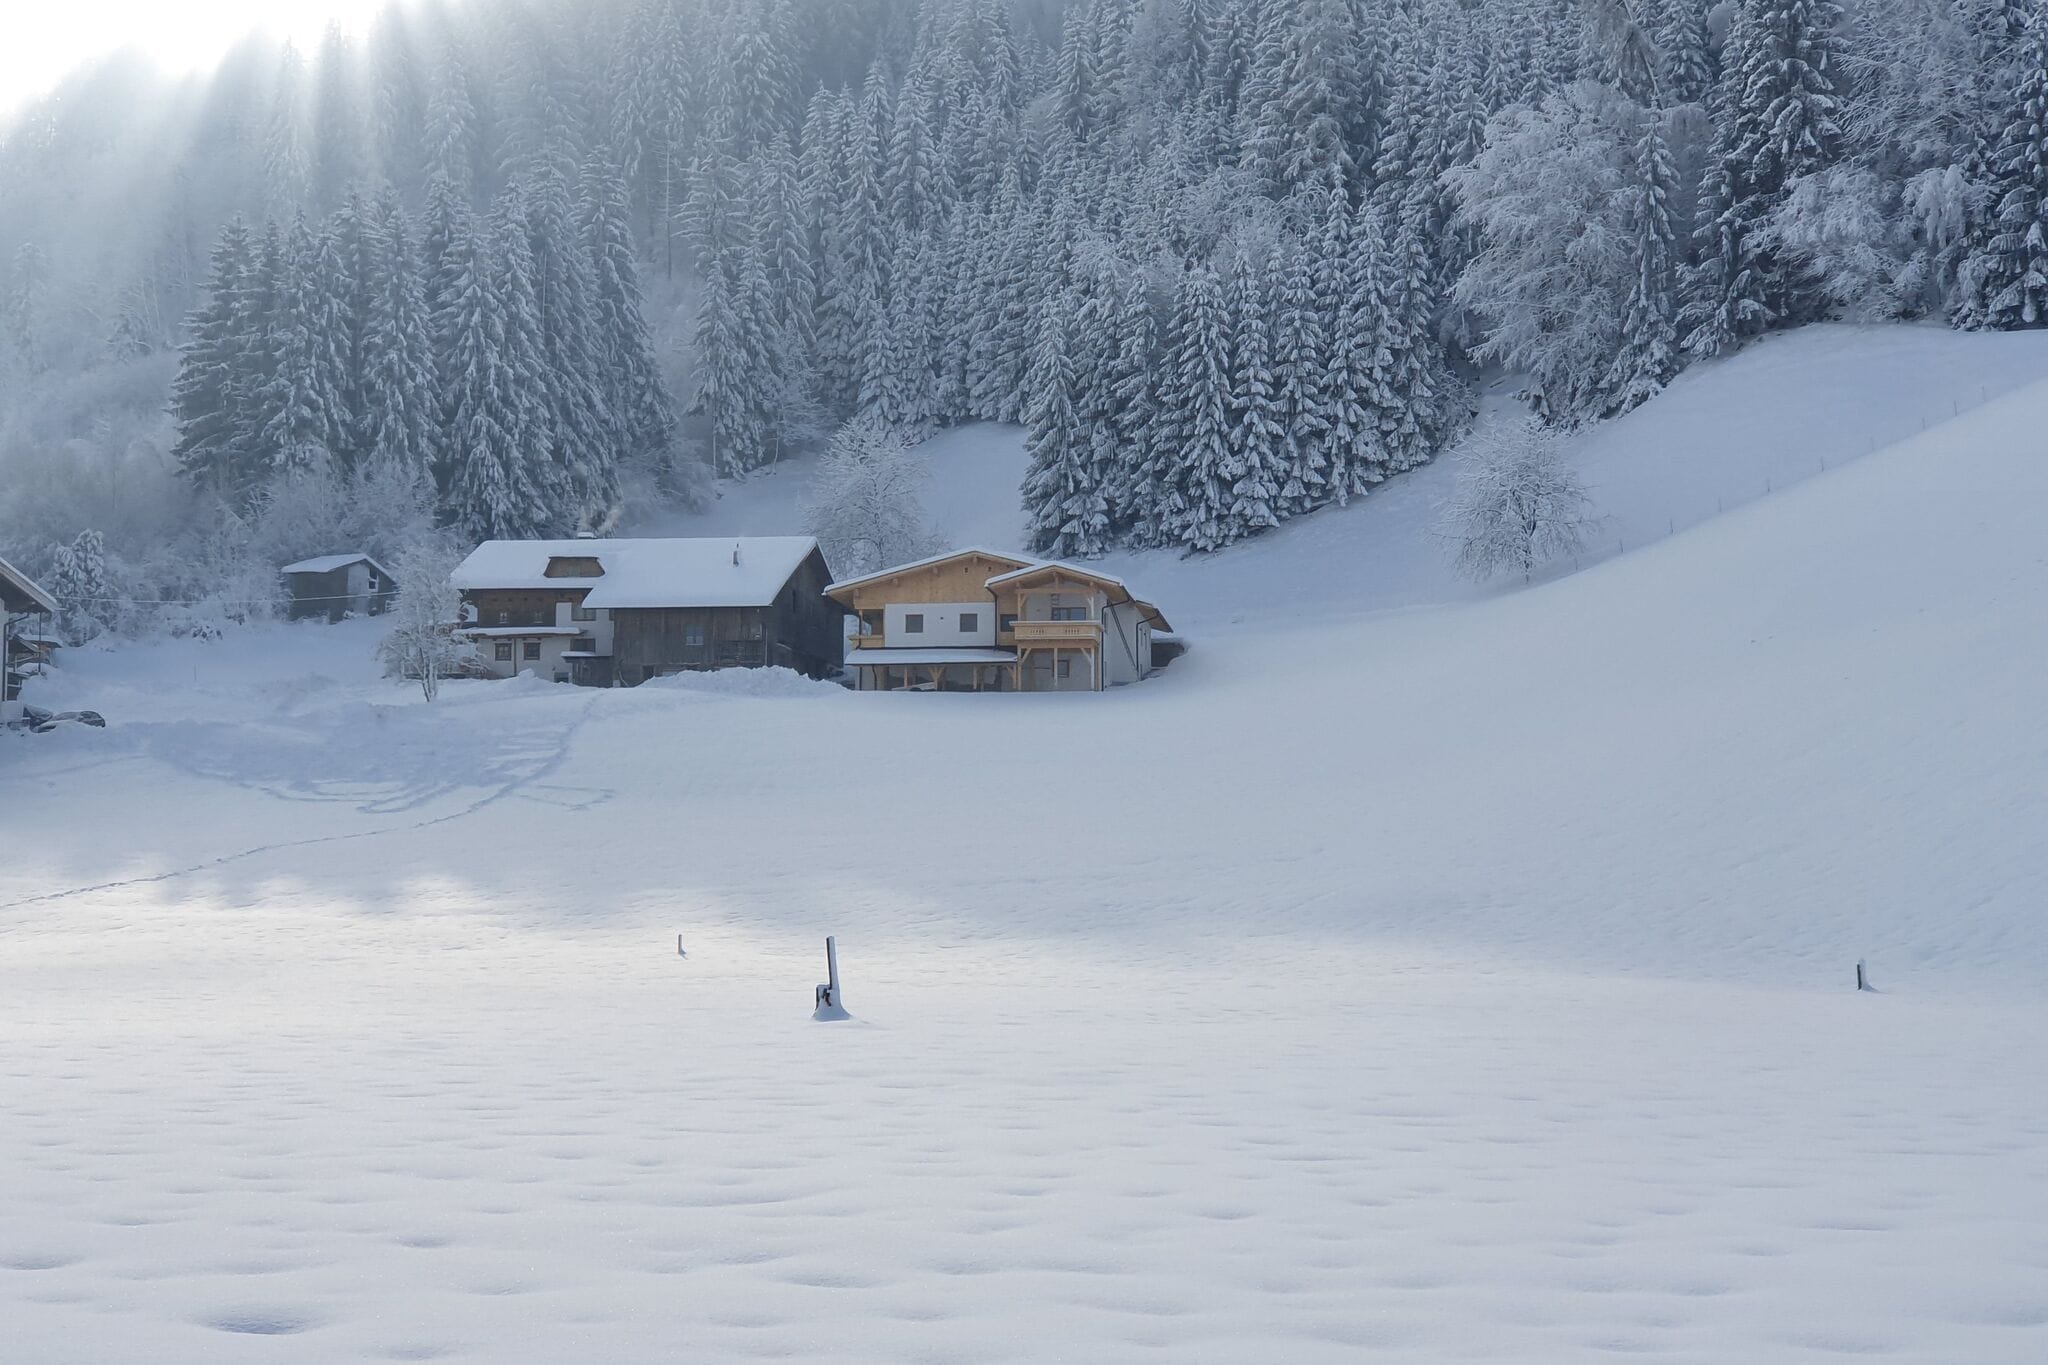 Ferienwohnung in Kaltenbach Tirol in Skigebietnähe